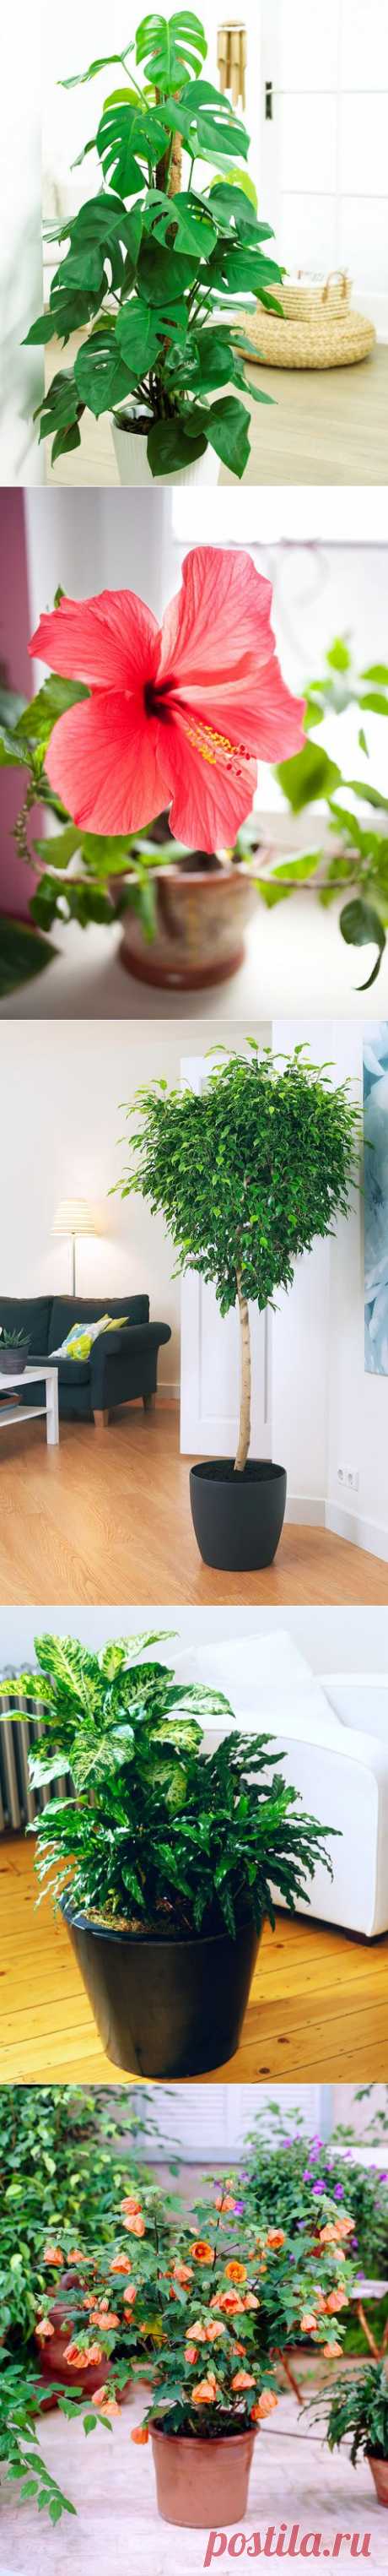 Цветы на пол: 10 лучших комнатных деревьев | статьи рубрики “Дом” | Леди Mail.Ru